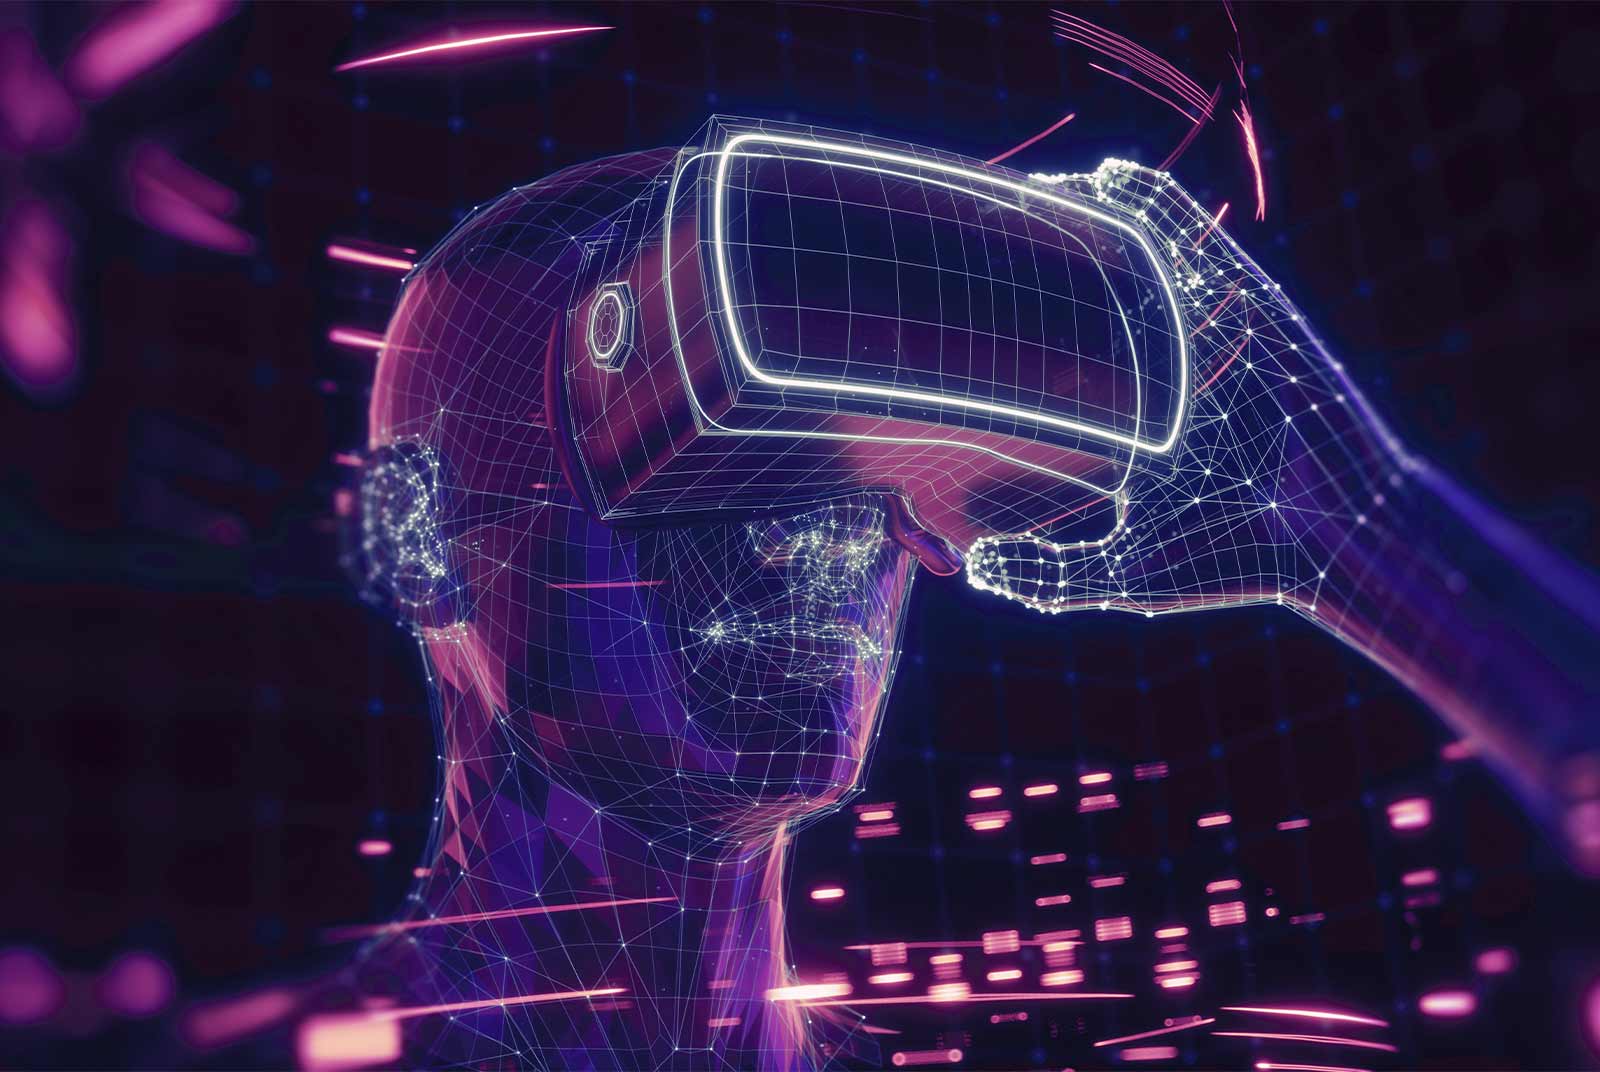 这是一张展示虚拟现实头盔和人类头部轮廓的图片，图中有数字化效果，彰显科技感和未来感。